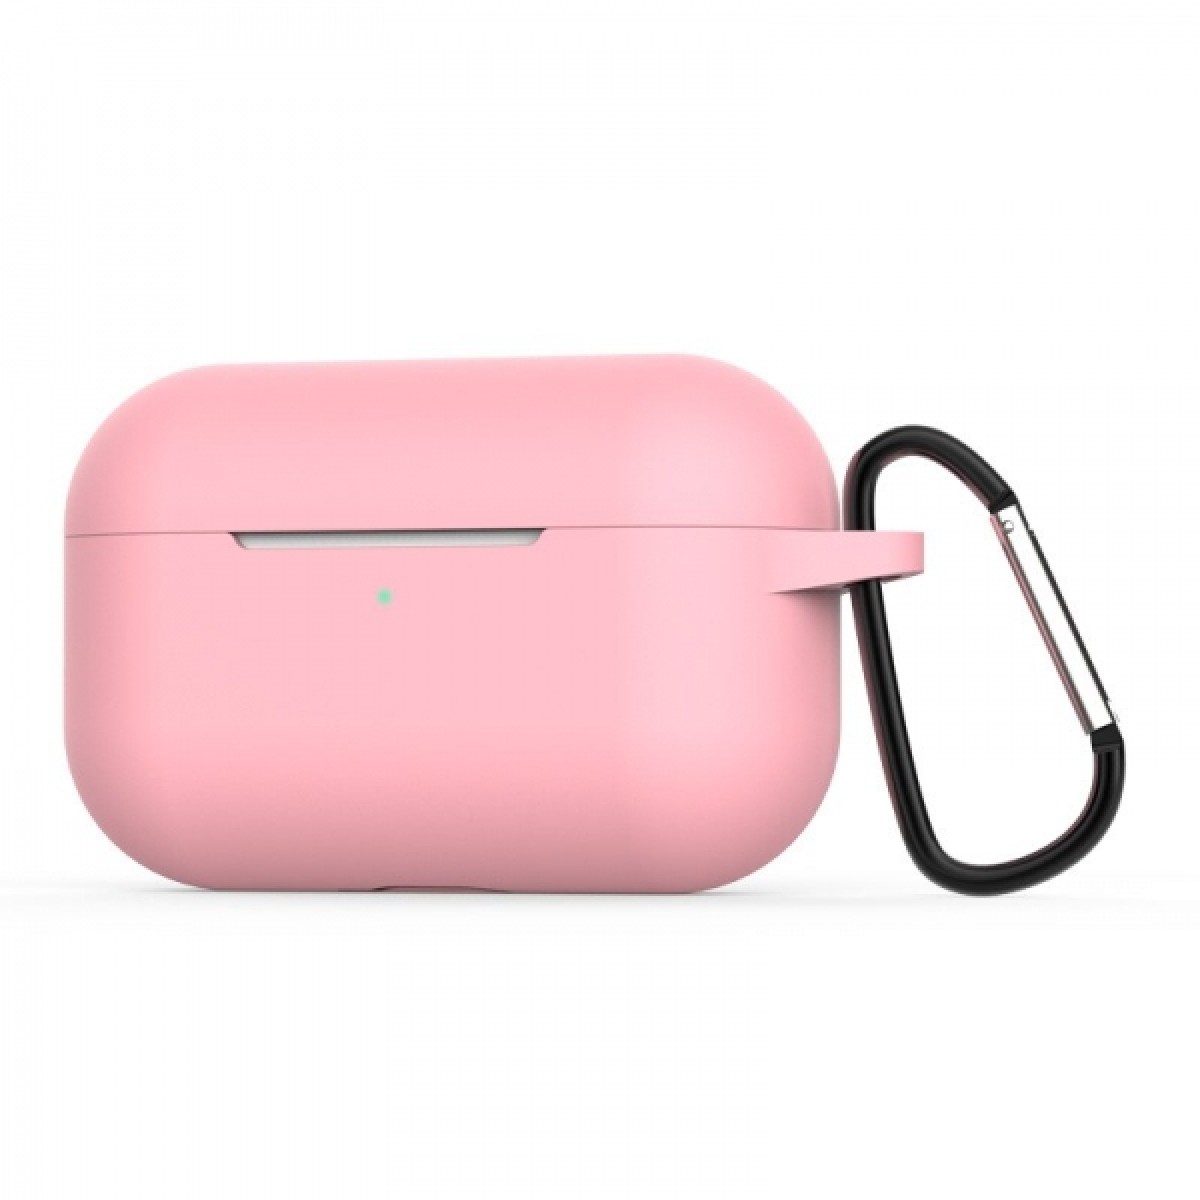 Θηκη για Apple Airpods Pro Senso Silicone Case with Holder Pink SEBAIRPROP